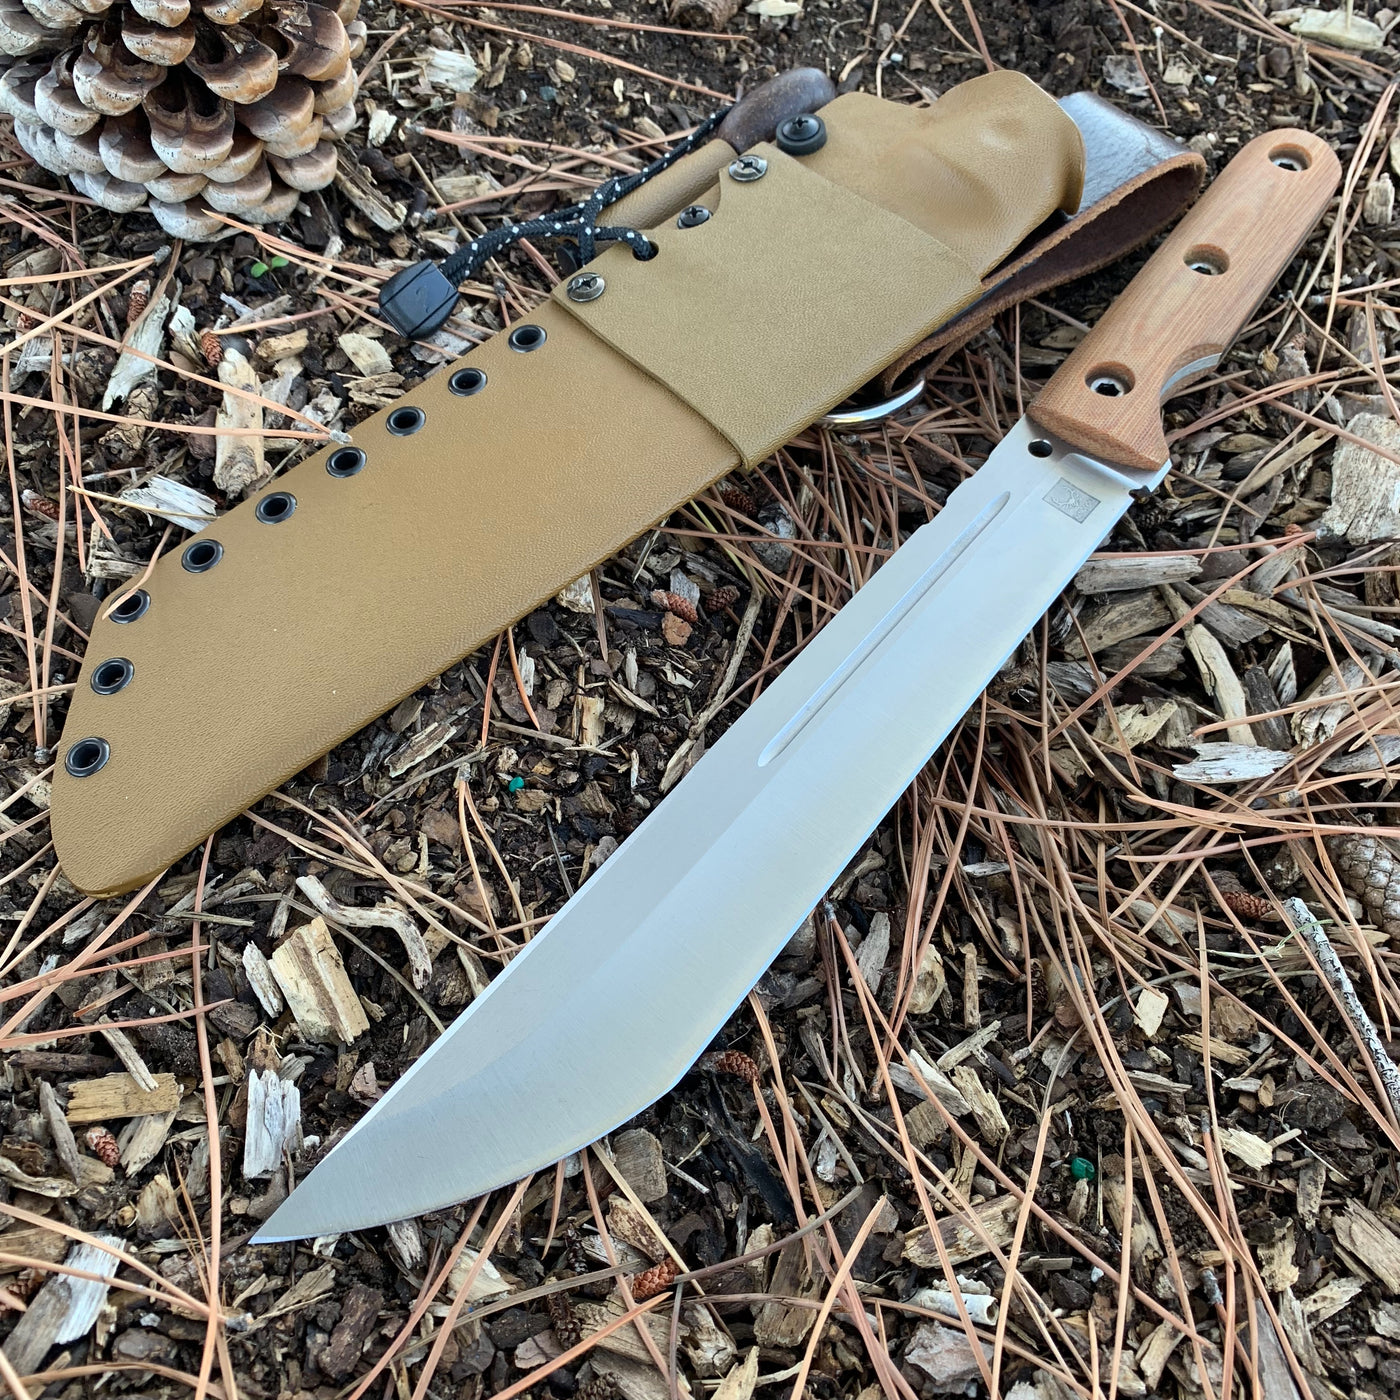 KA Custom Kraken Fixed Blade